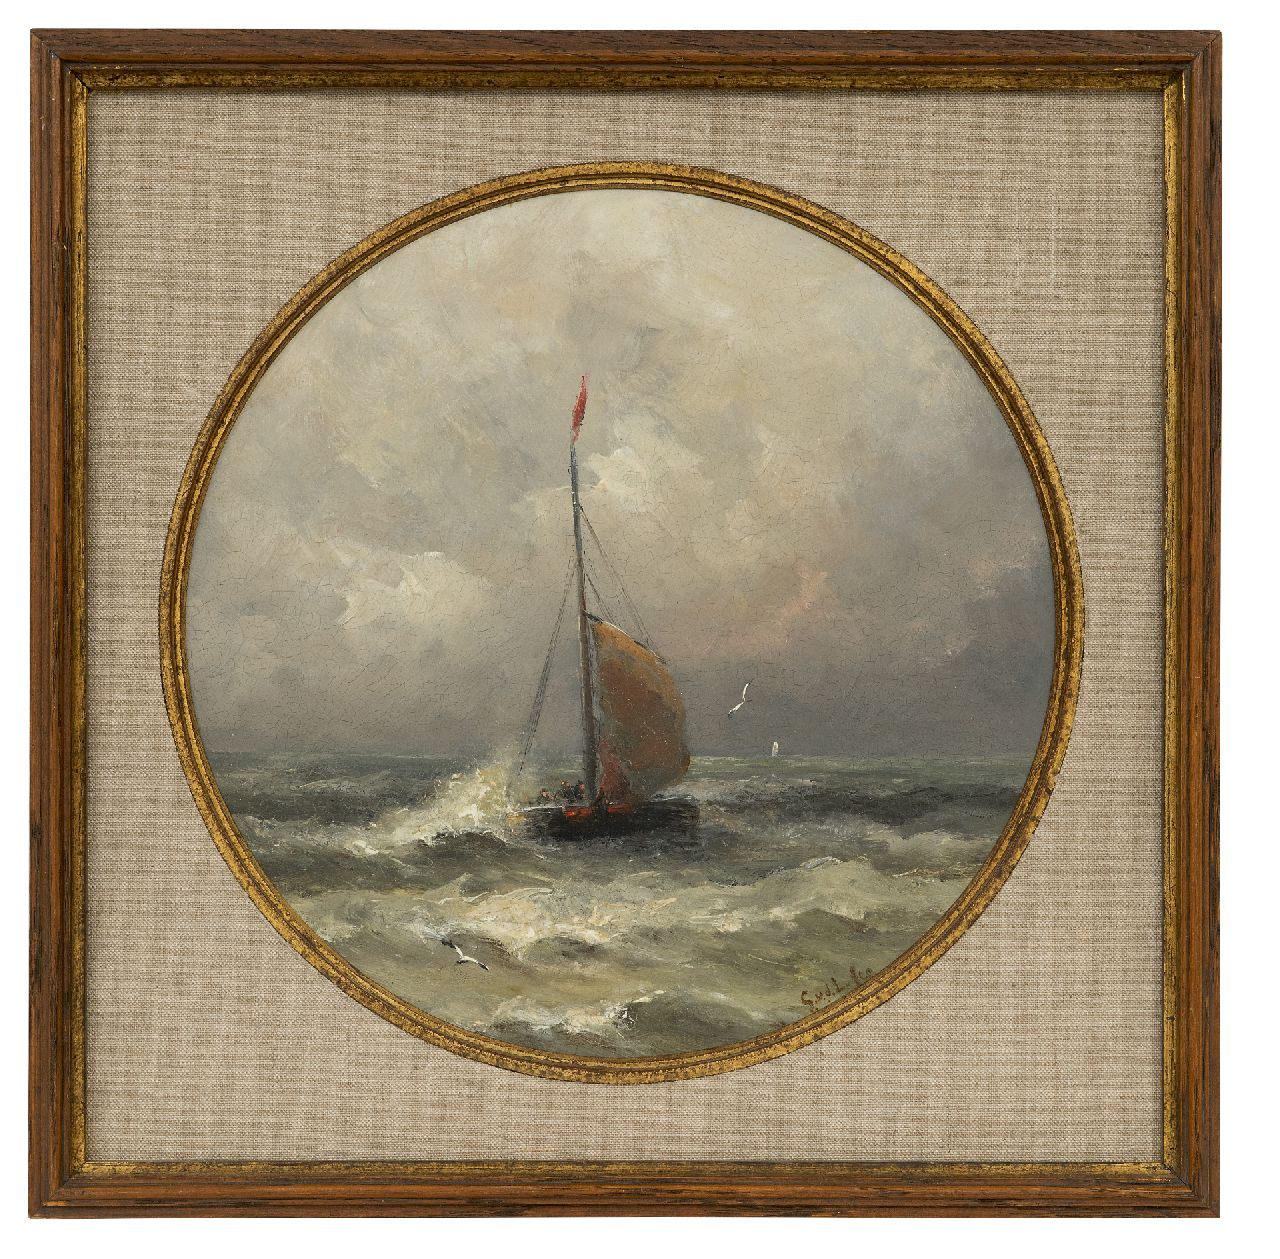 Laan G. van der | Gerard van der Laan | Schilderijen te koop aangeboden | Aankomende bomschuit, olieverf op porselein 28,3 x 28,3 cm, gesigneerd rechtsonder met initialen